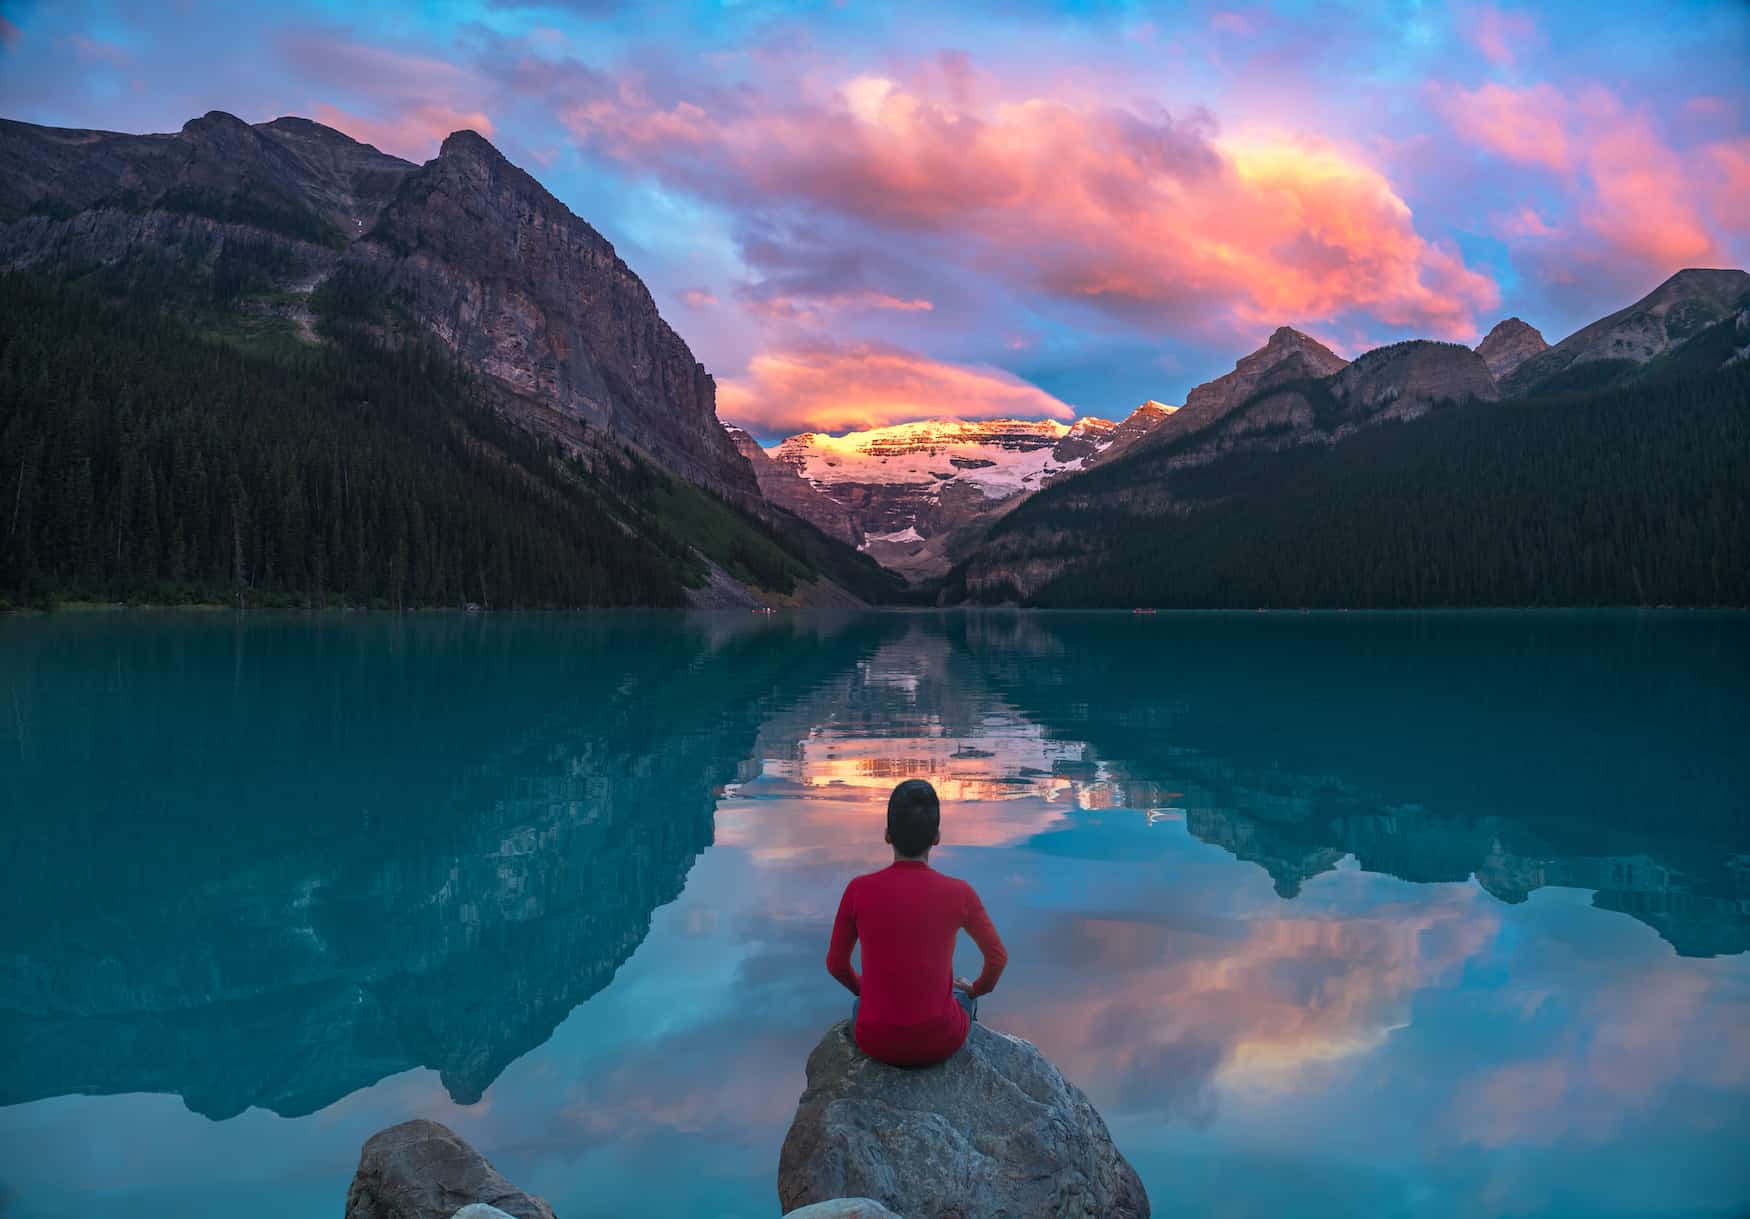 Junge vor der malerischen Kulisse des Lake Louise mit den Canadian Rockies im Hintergrund